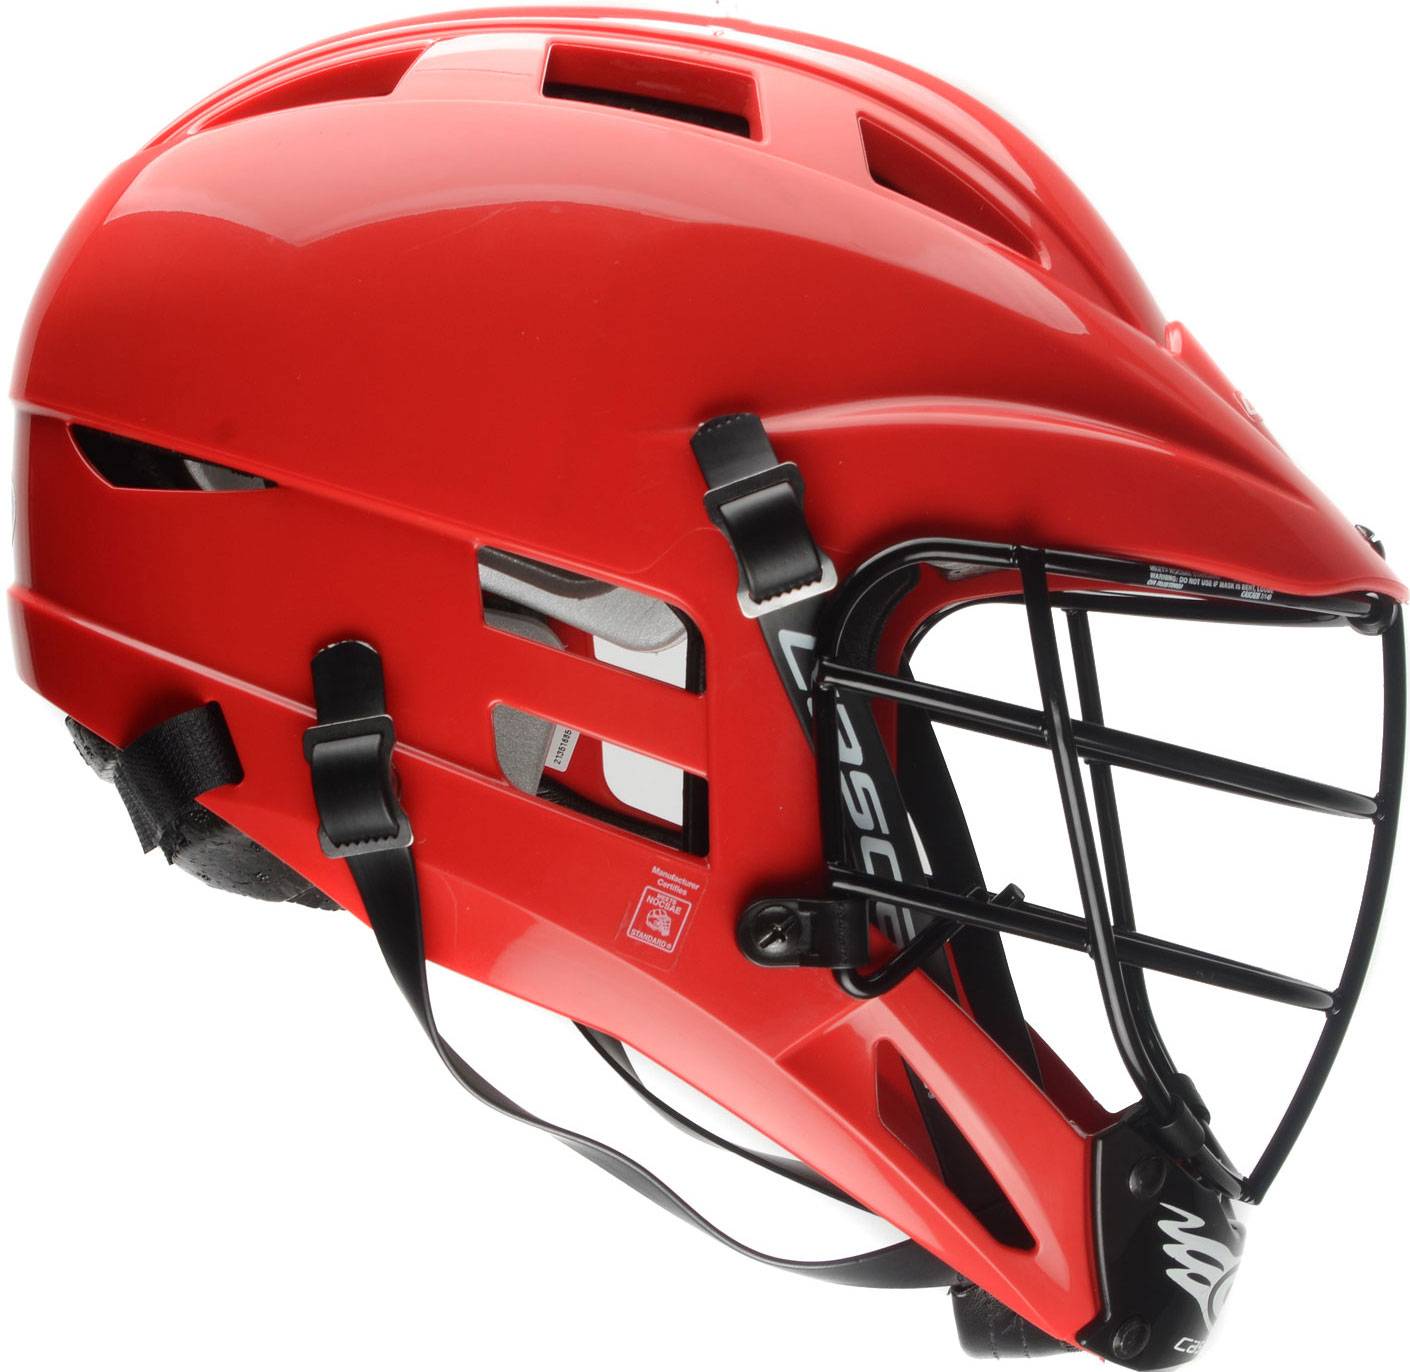 Cascade CSR Youth Lacrosse Helmet